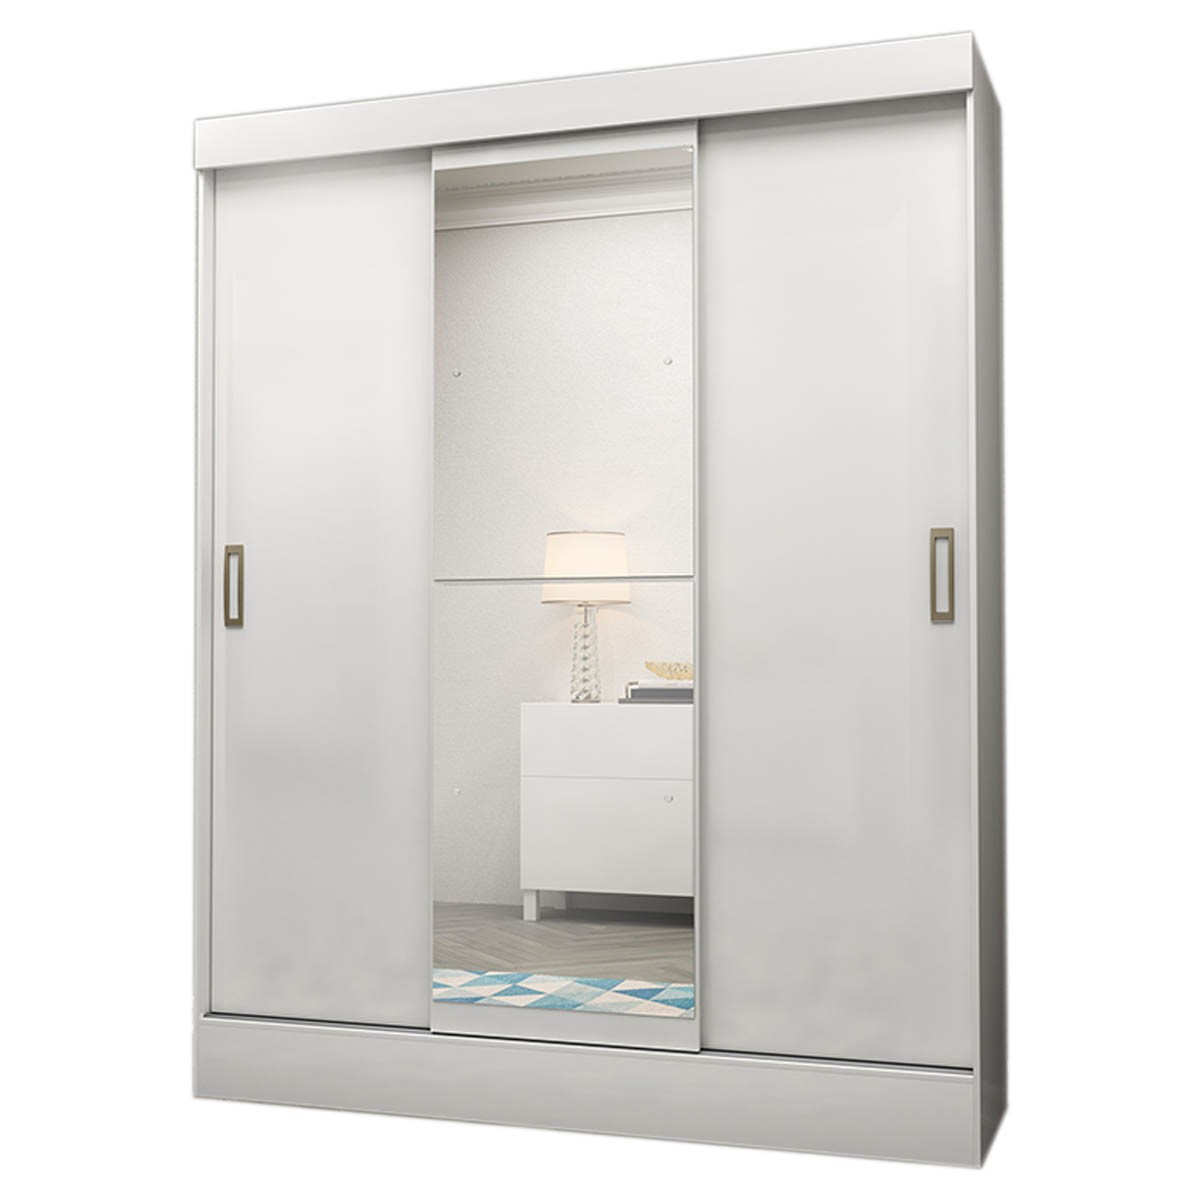 Ropero Closet Moderno con Espejo 3 Puertas  2 Cajones Internos Rieles Metalicos Color Blanco 3537-1 